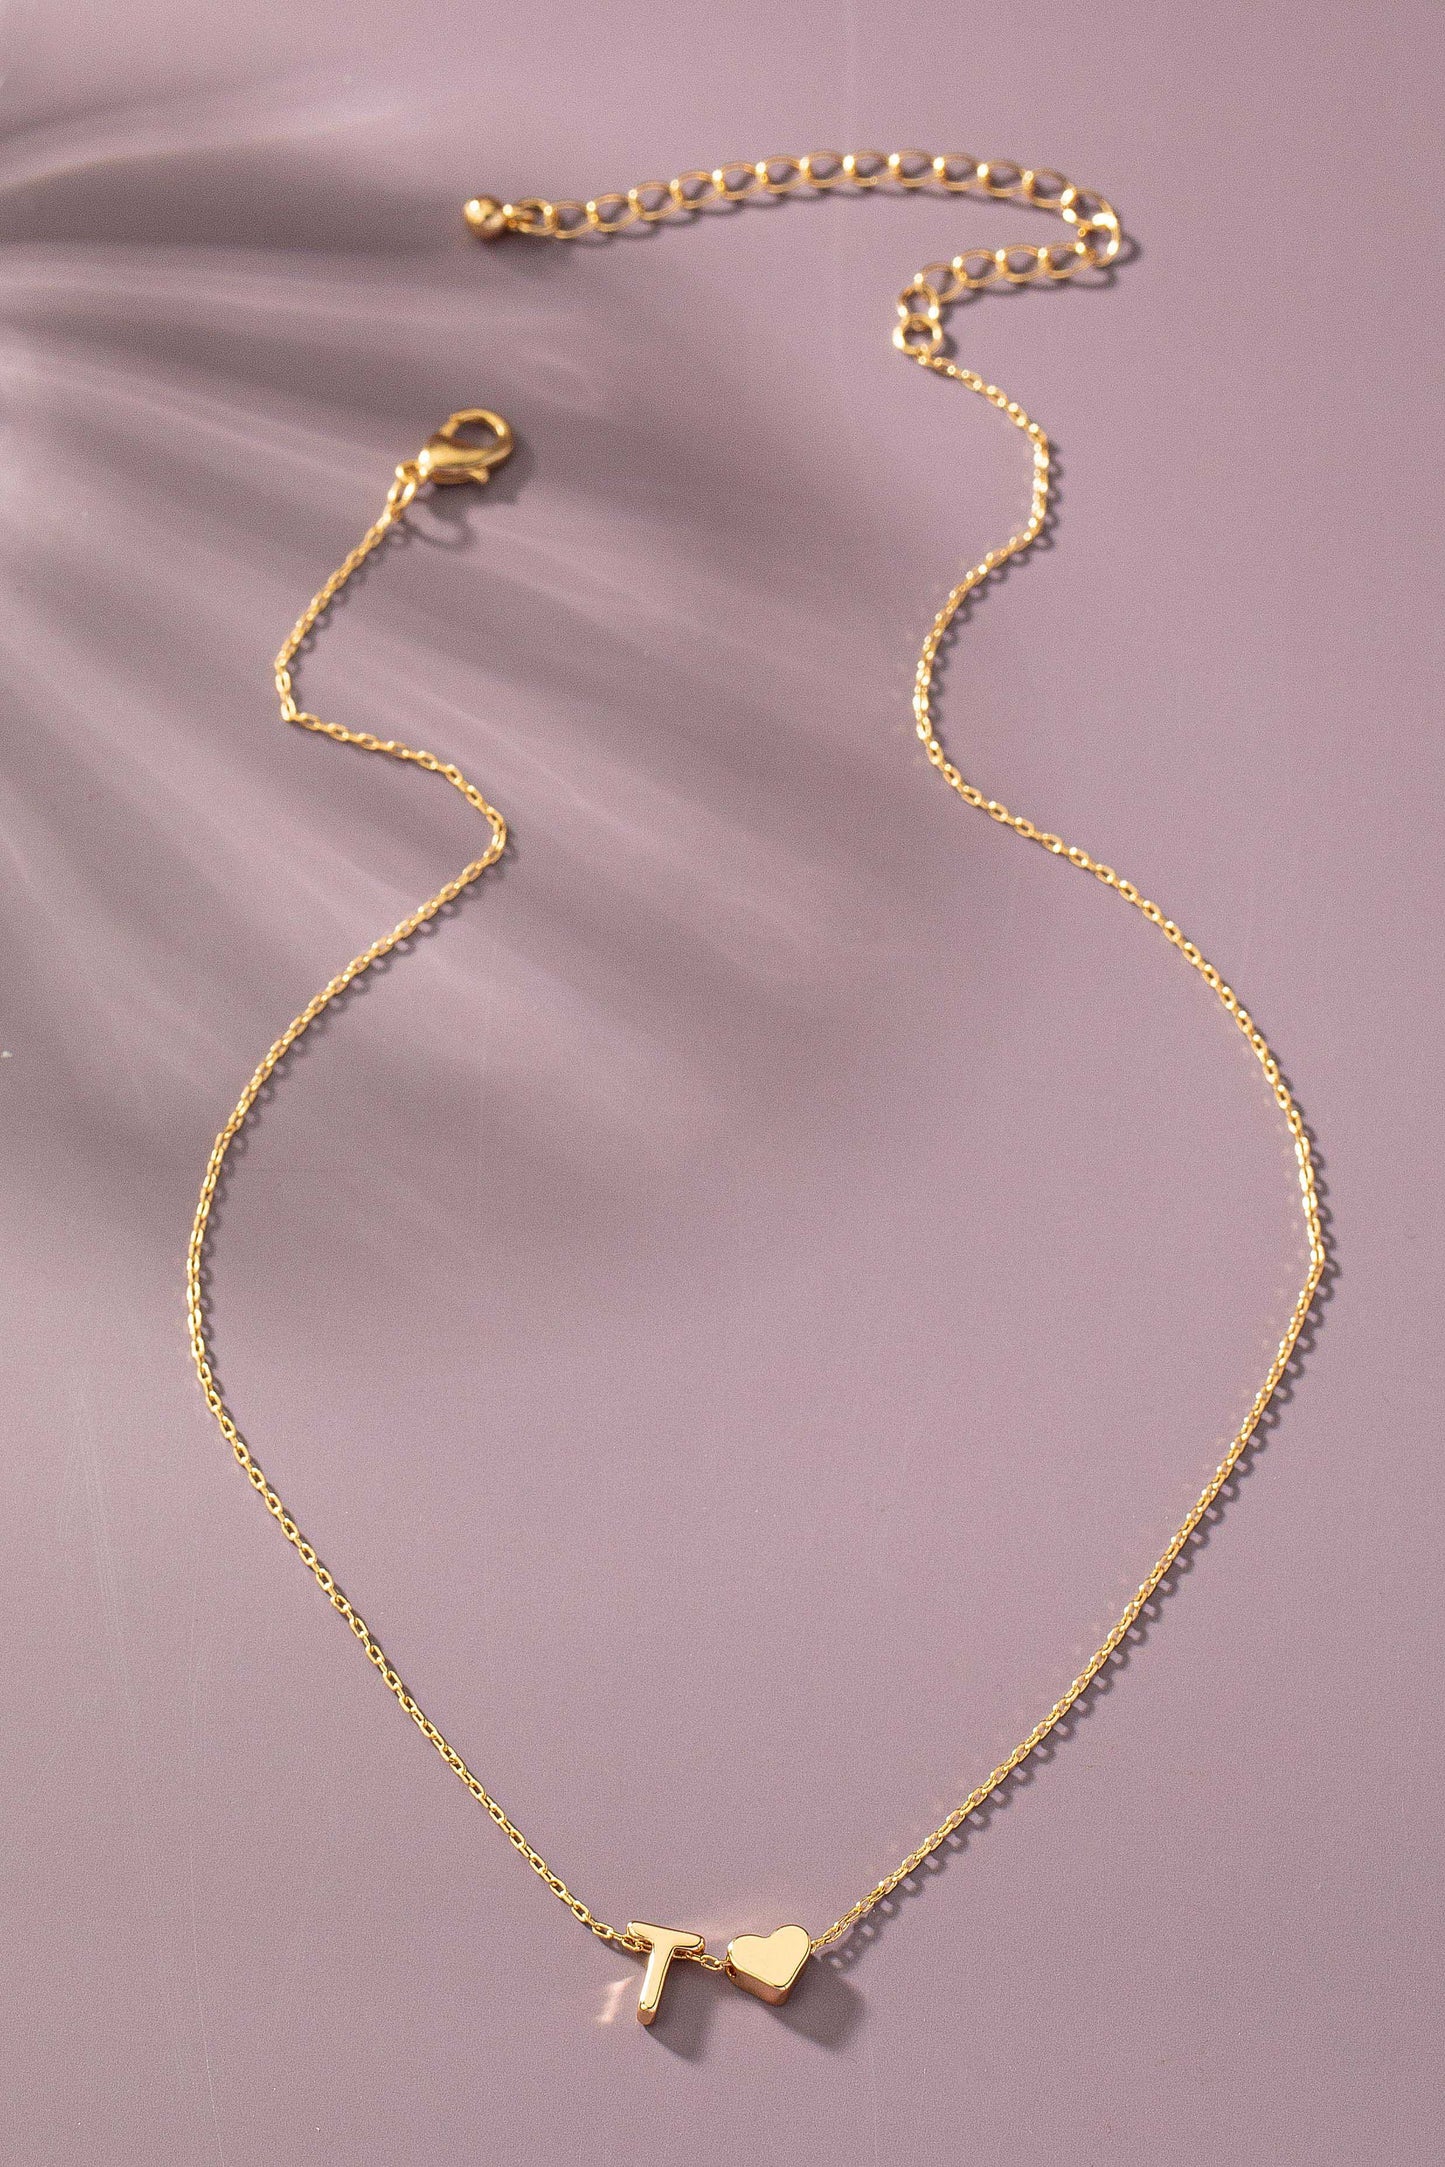 Brass Mini Initial w/Heart Charm Necklace.